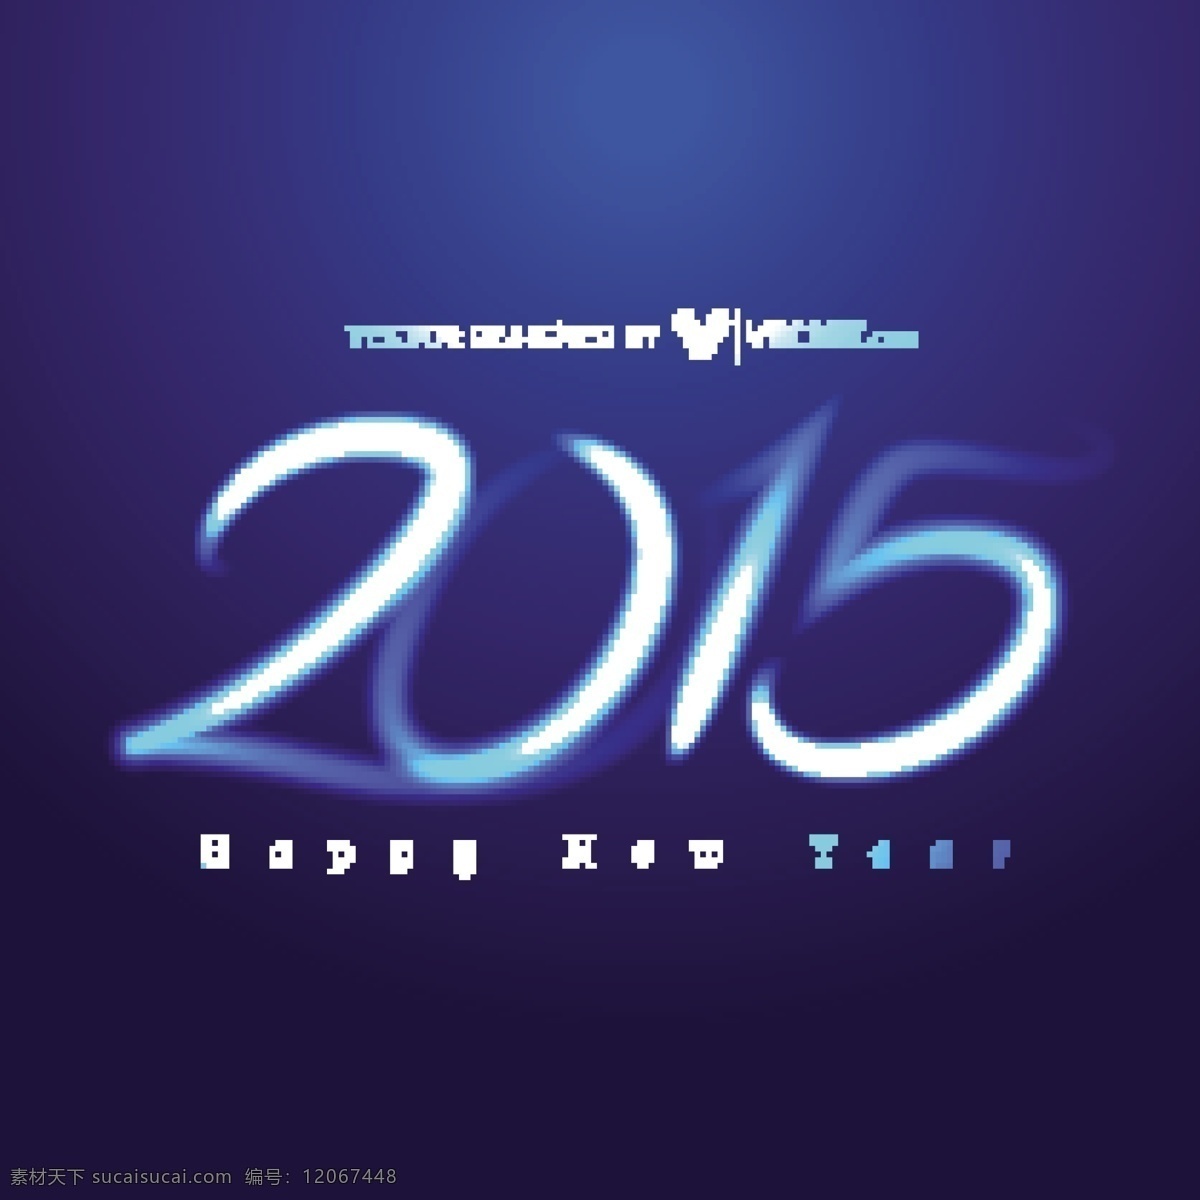 烟雾 缭绕 排版 新 2015 年 背景 蓝色 新年快乐